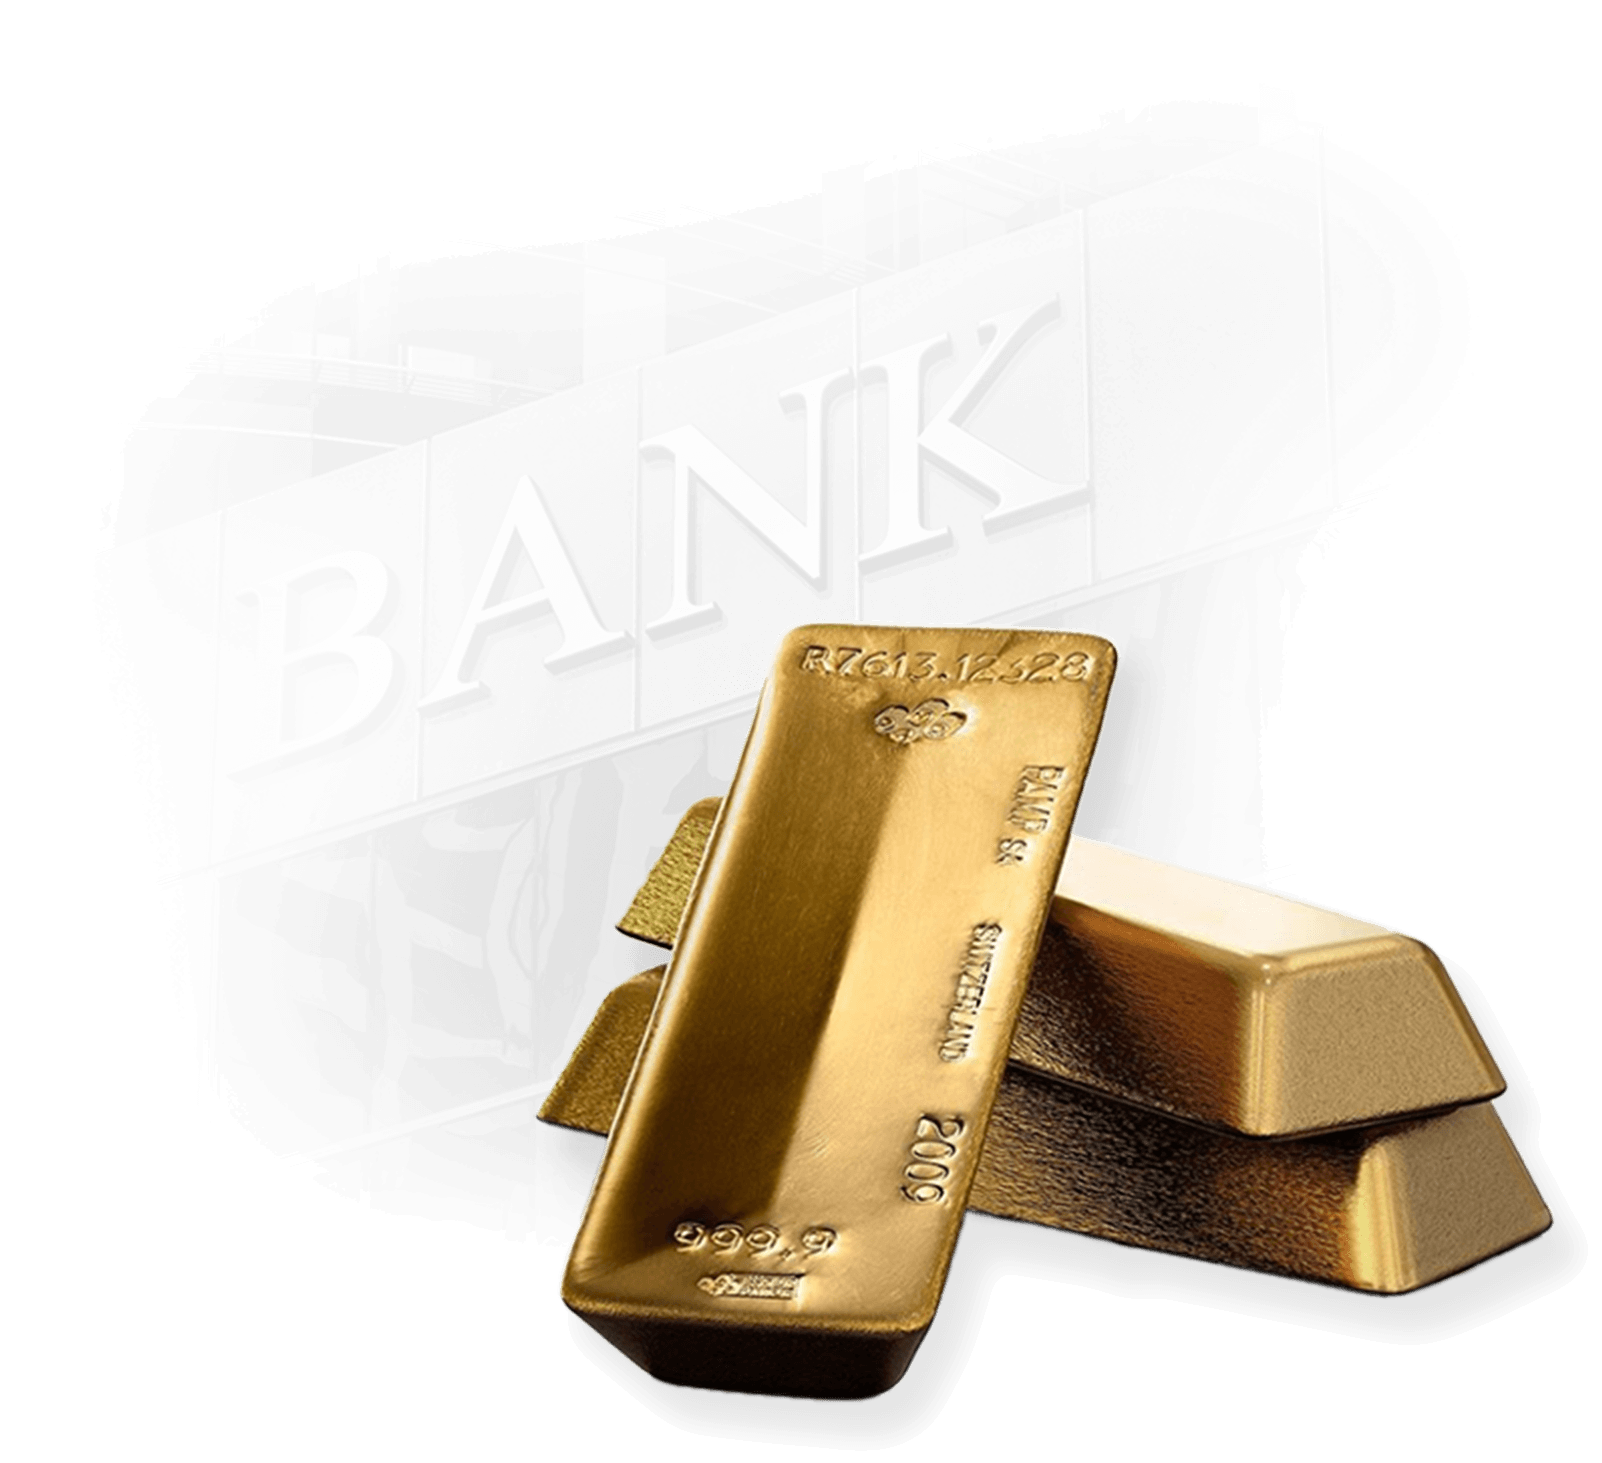 Központi bankok és arany